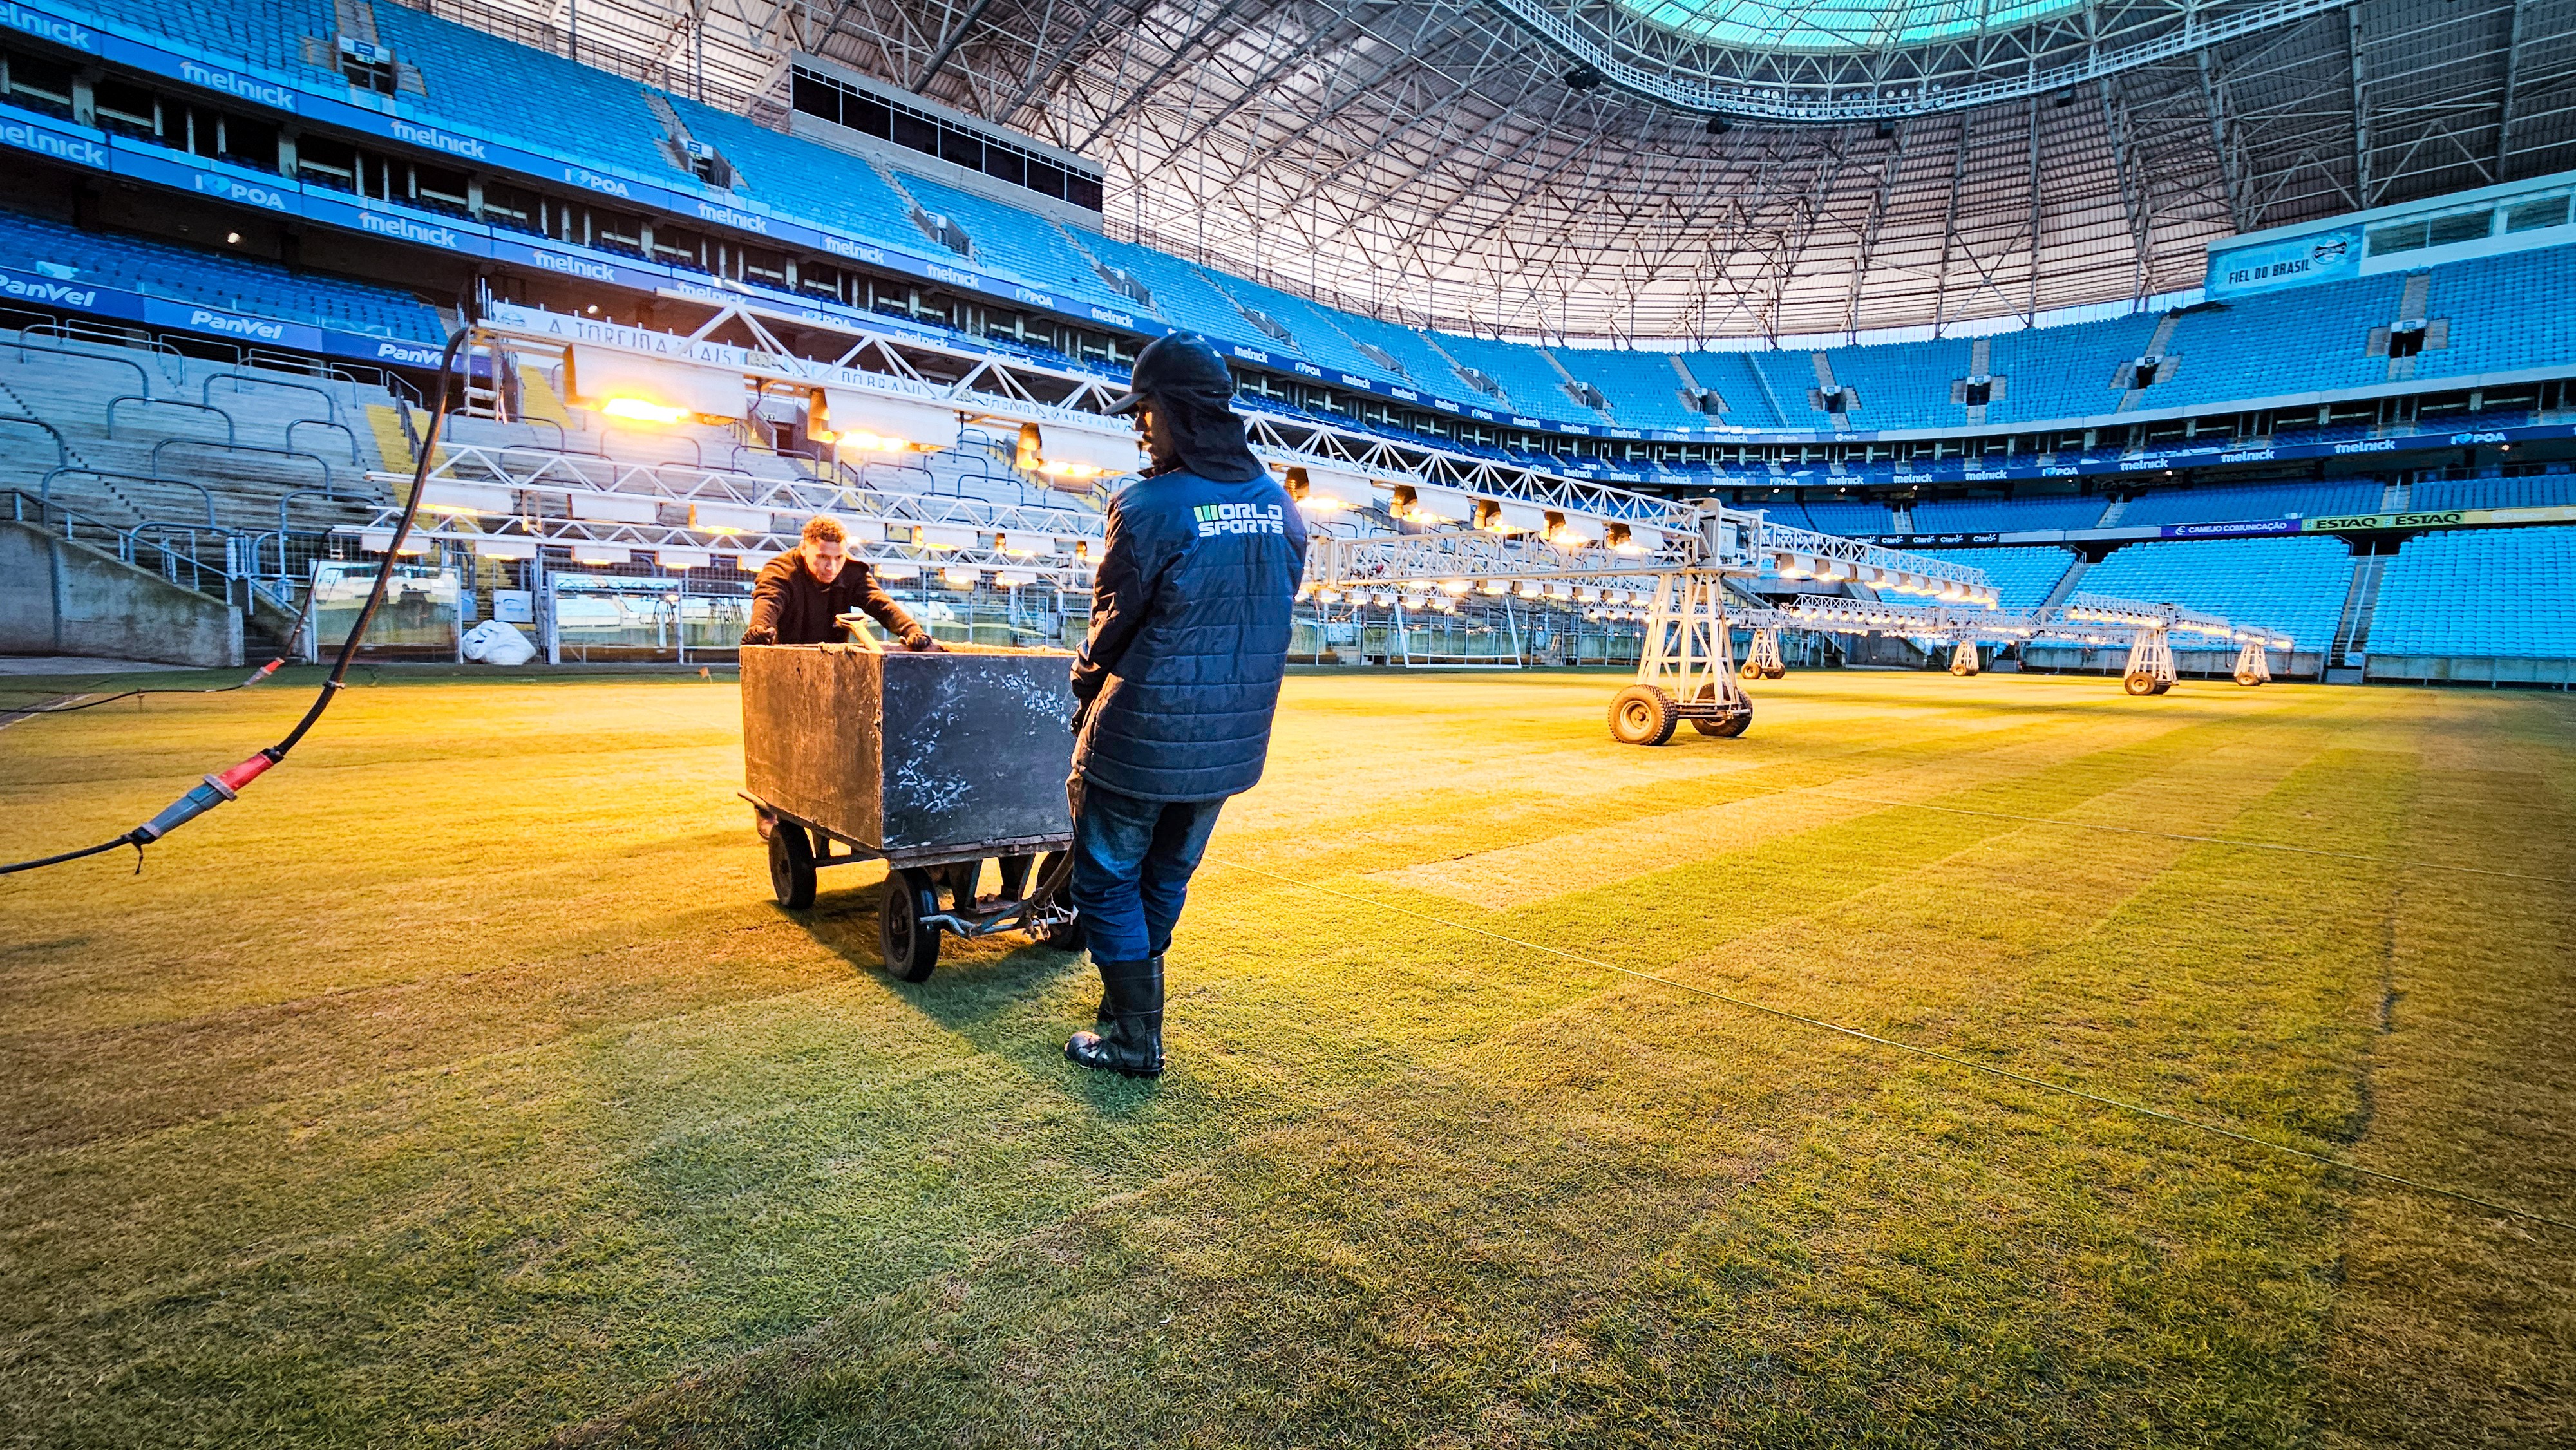 Arena do Grêmio será reaberta no dia 1º de setembro, diz empresa; data pode ser antecipada se gramado estiver pronto